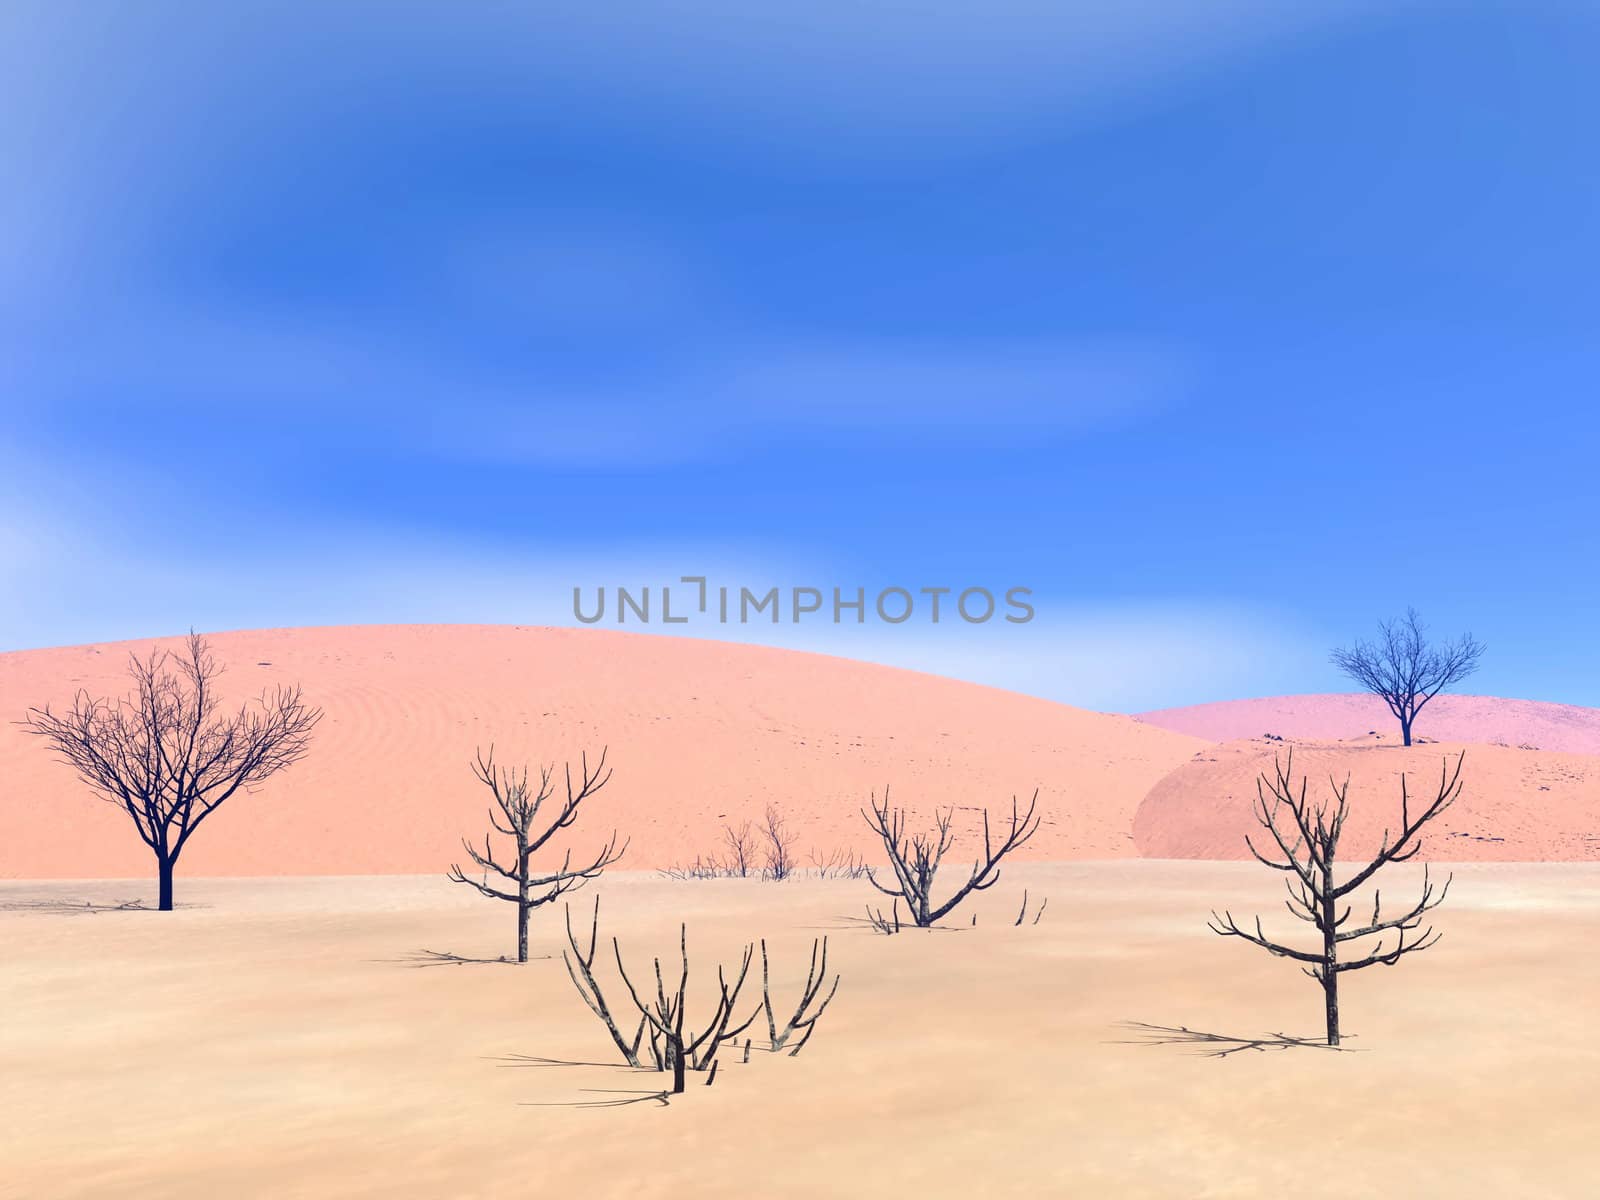 Dead landscape - 3D render by Elenaphotos21